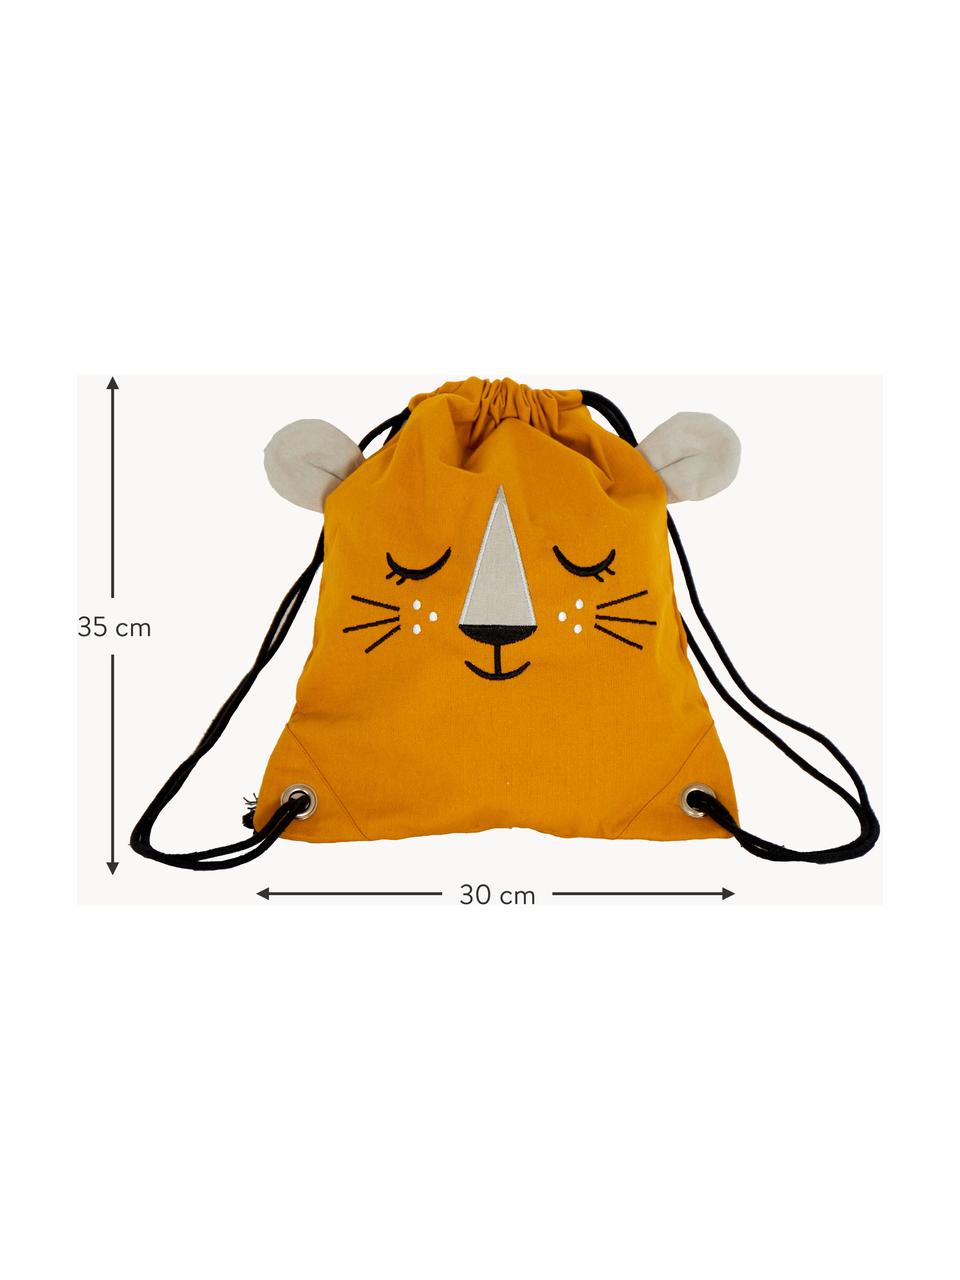 Kinder-Beutelrucksack Lion, 100 % Bio-Baumwolle, GOTS-zertifiziert, Orange, B 30 x H 35 cm